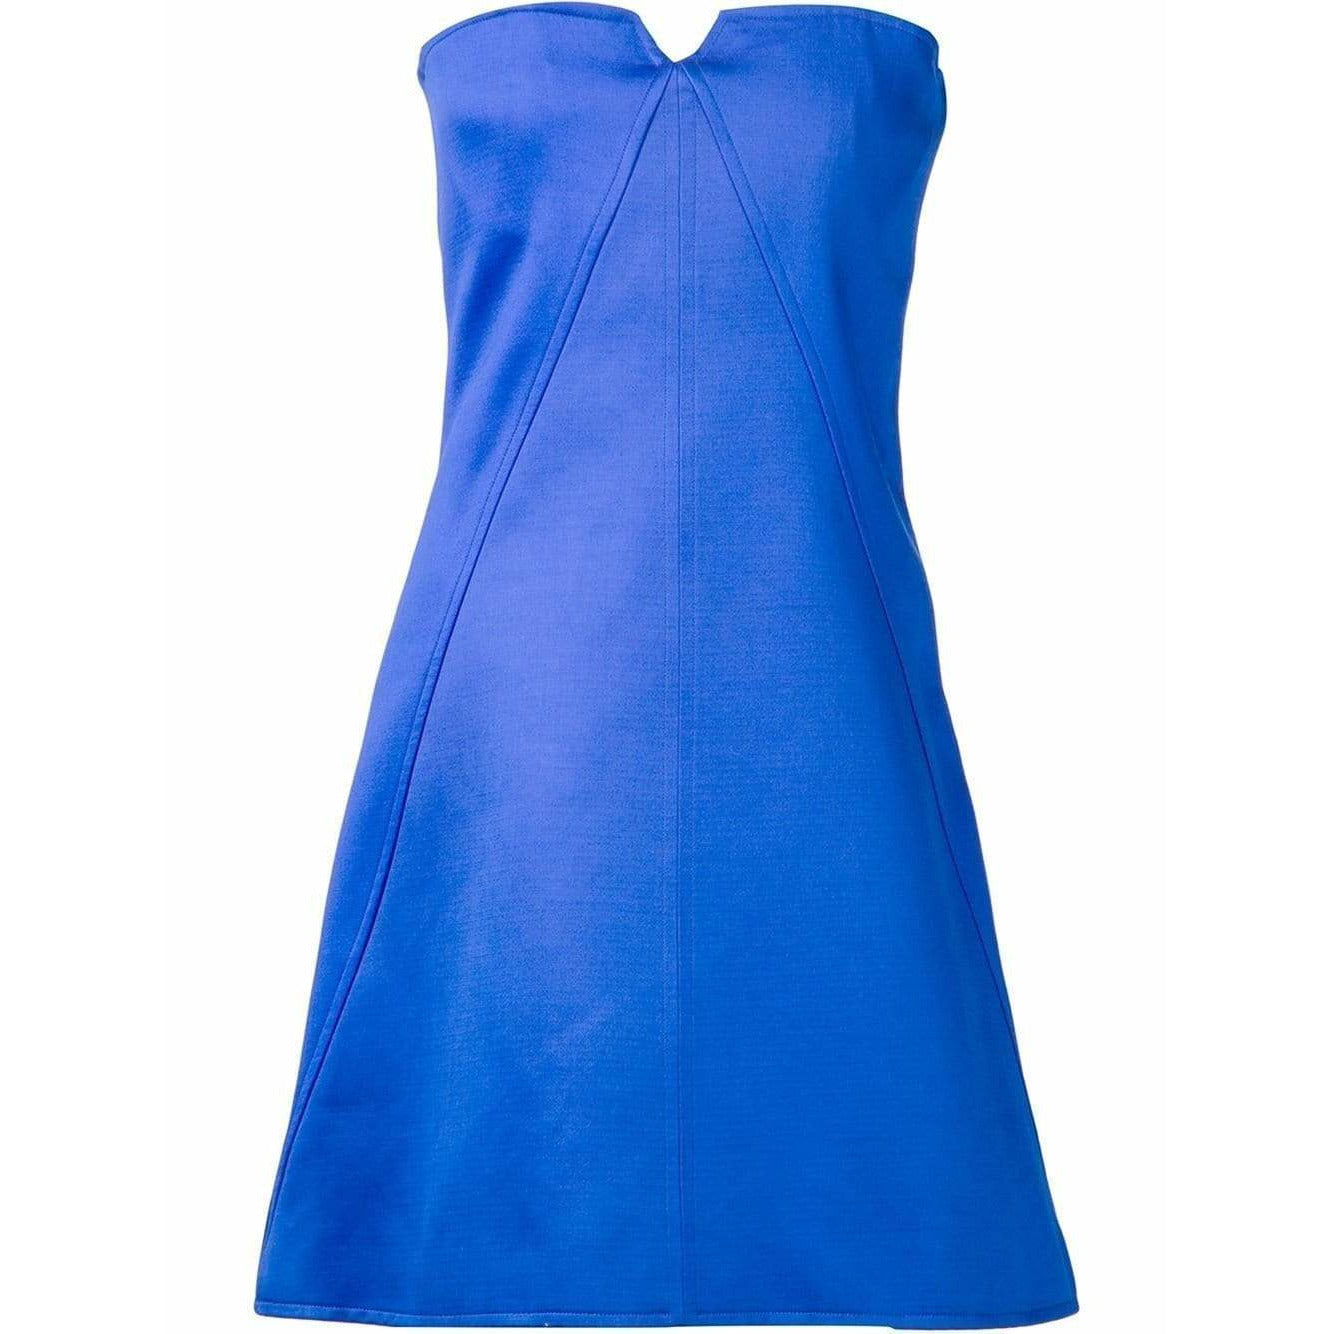 courreges-strapless-a-line-dress Dresses Royal Blue